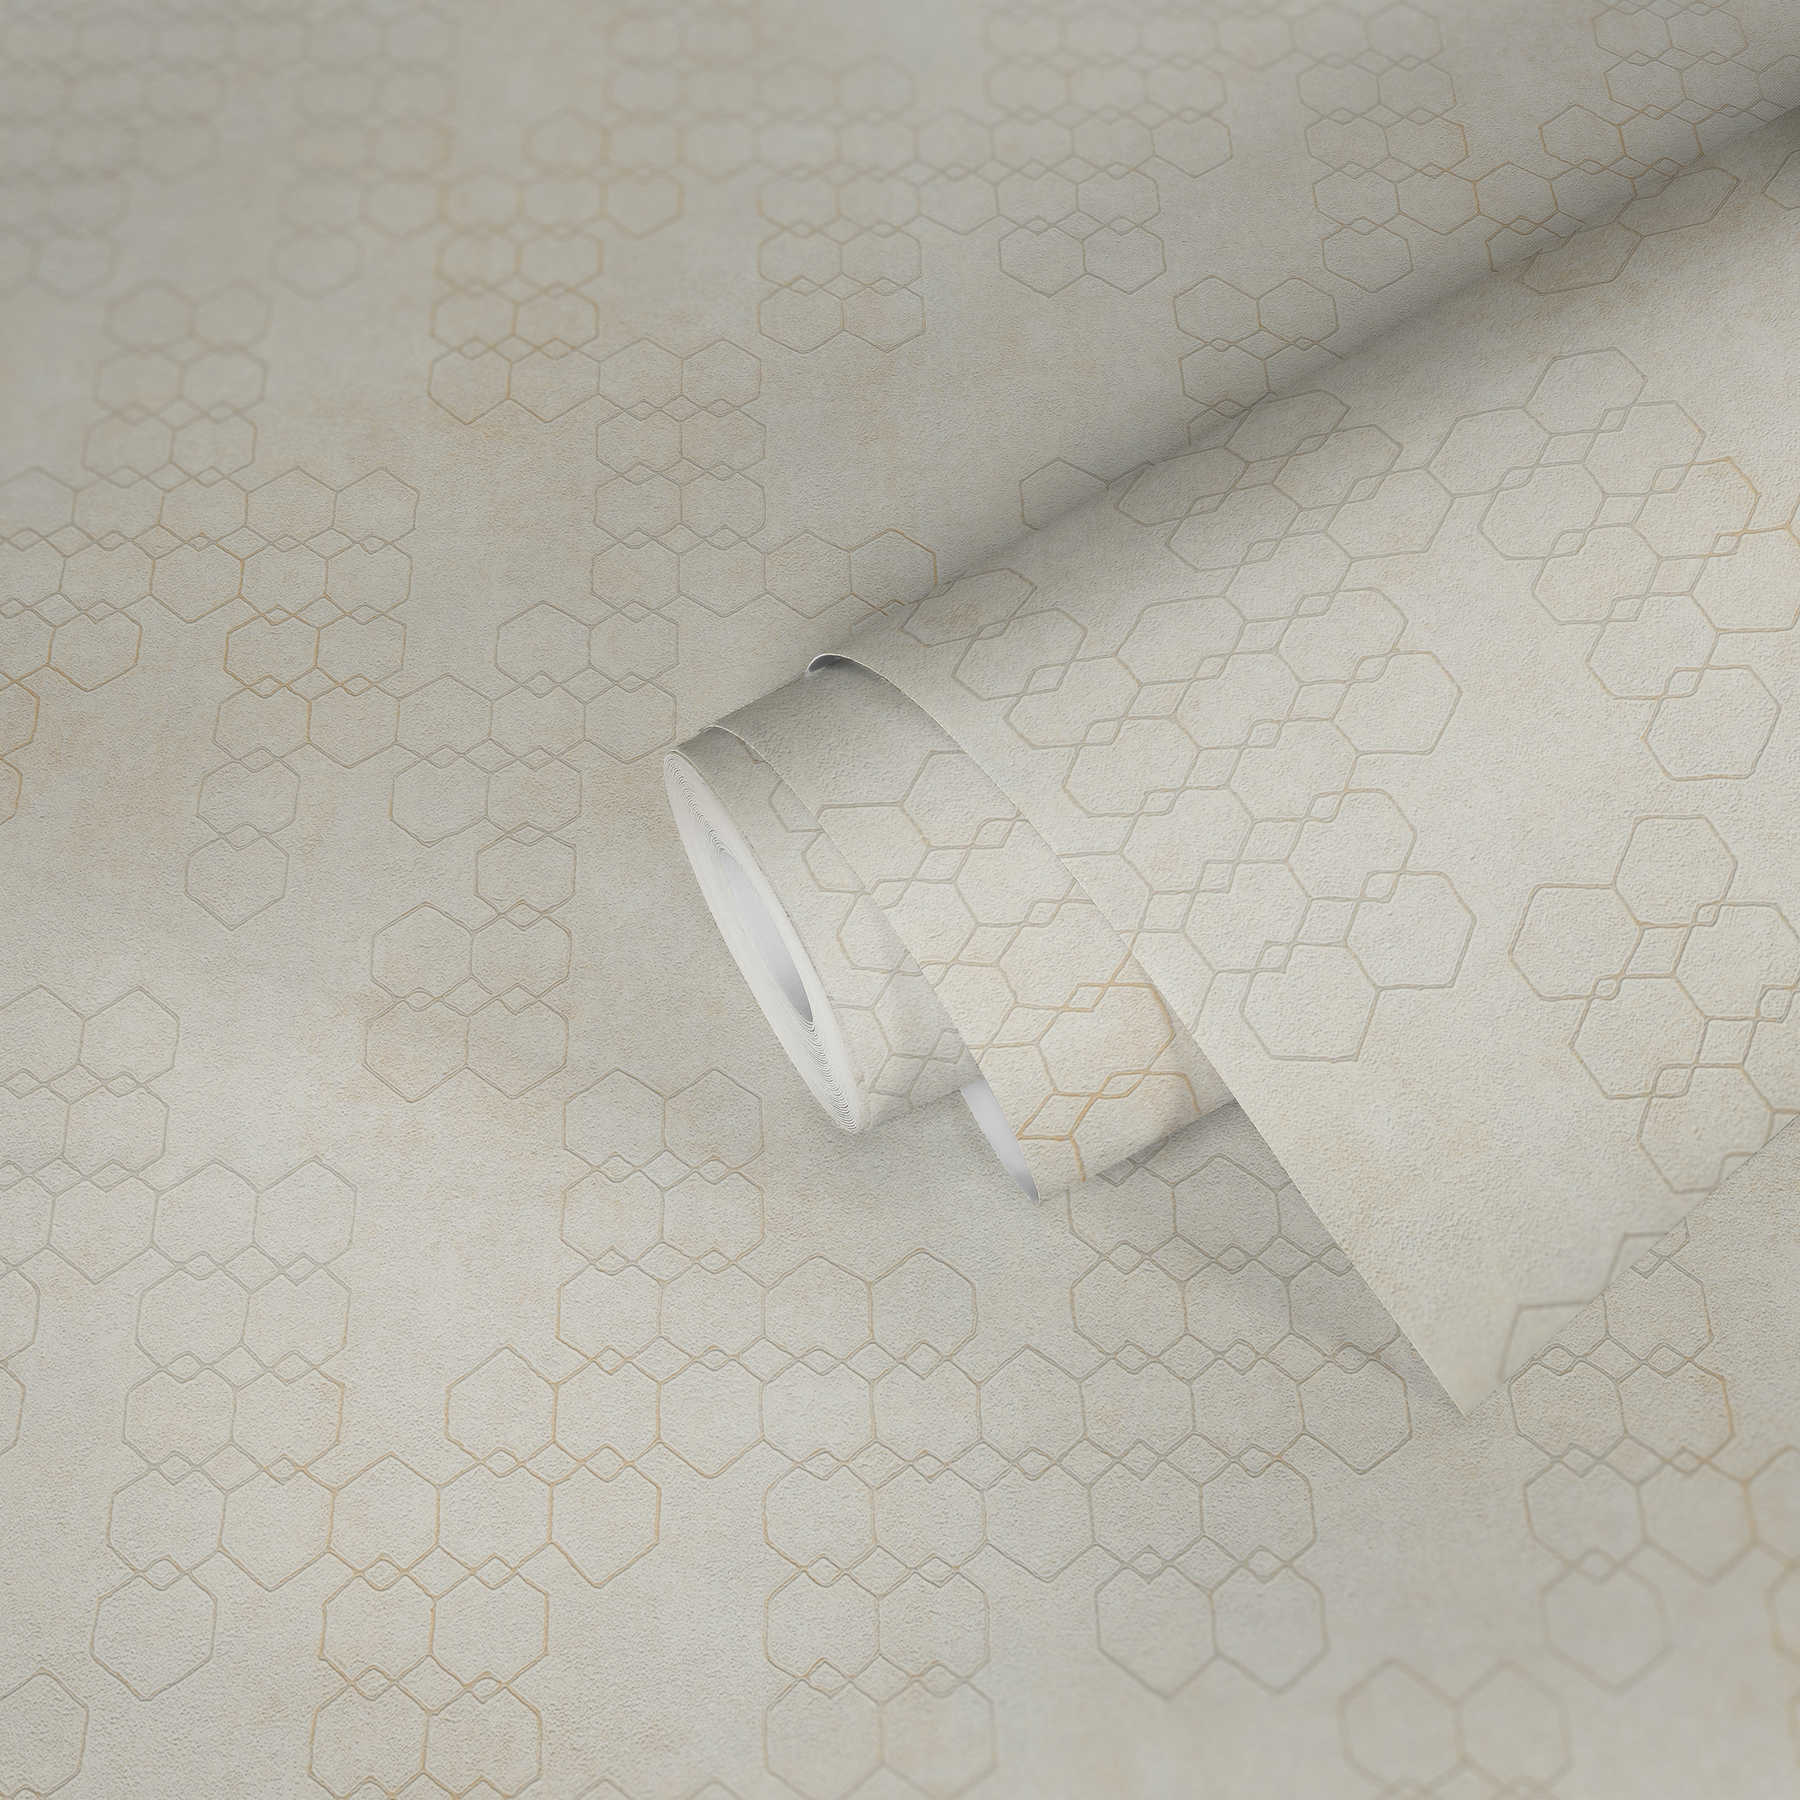             Geometrisch patroonbehang in industriële stijl - crème, grijs, wit
        